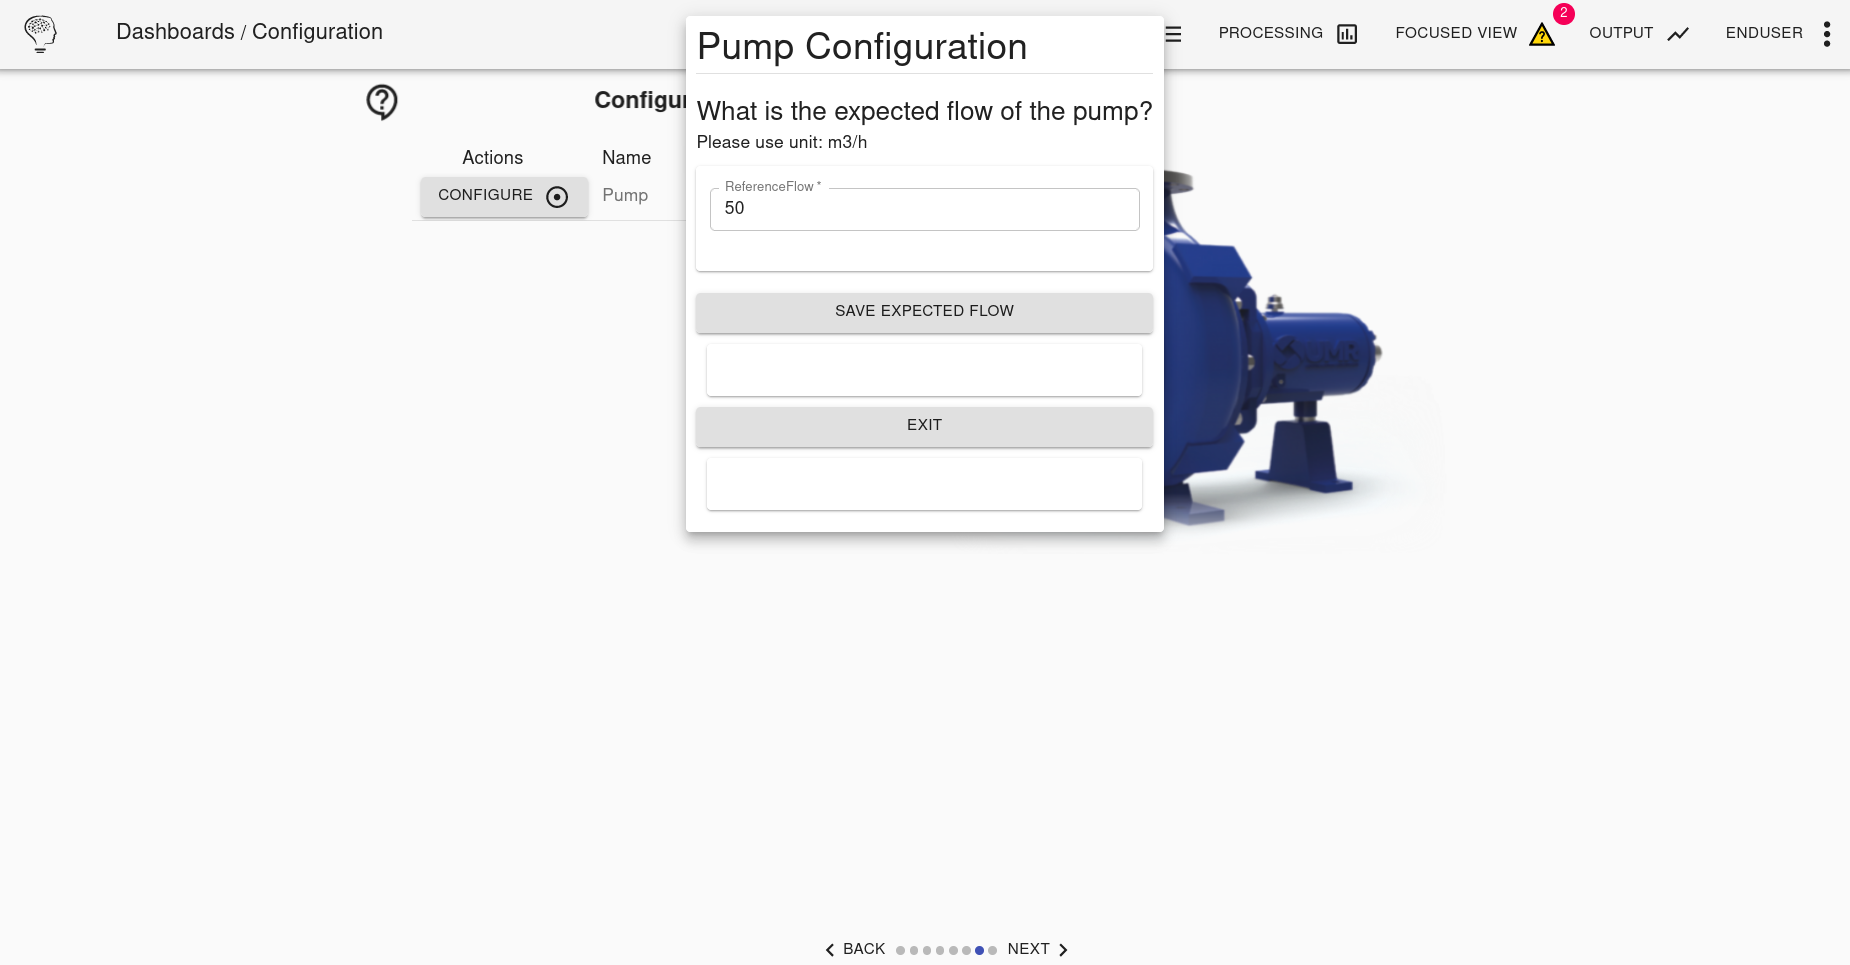 apms-pump-config2.png